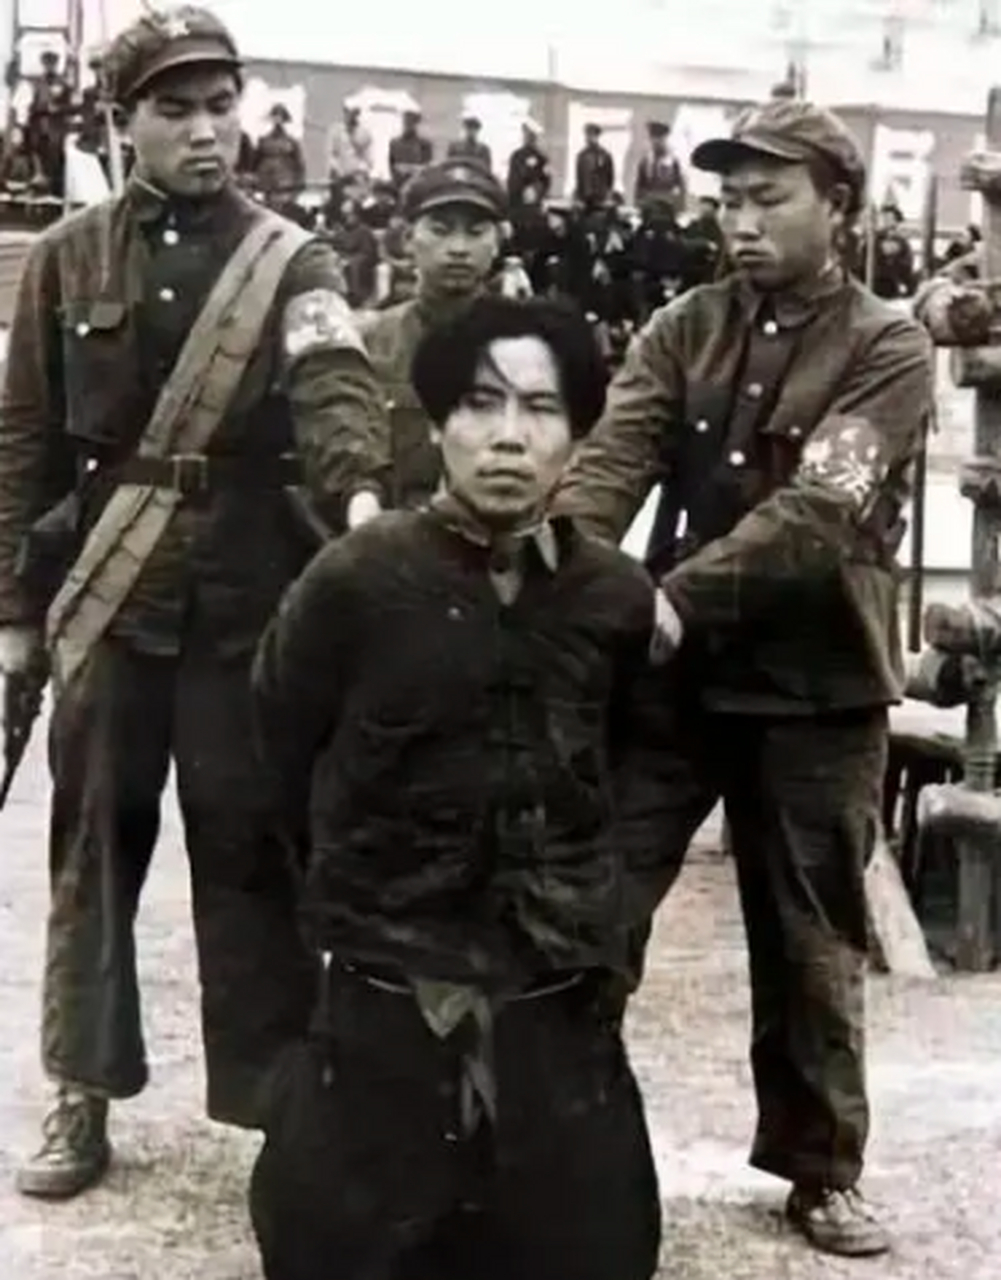 1954年,军统大飞贼段云鹏被捕,他被几名战士押解,还一脸的不服气